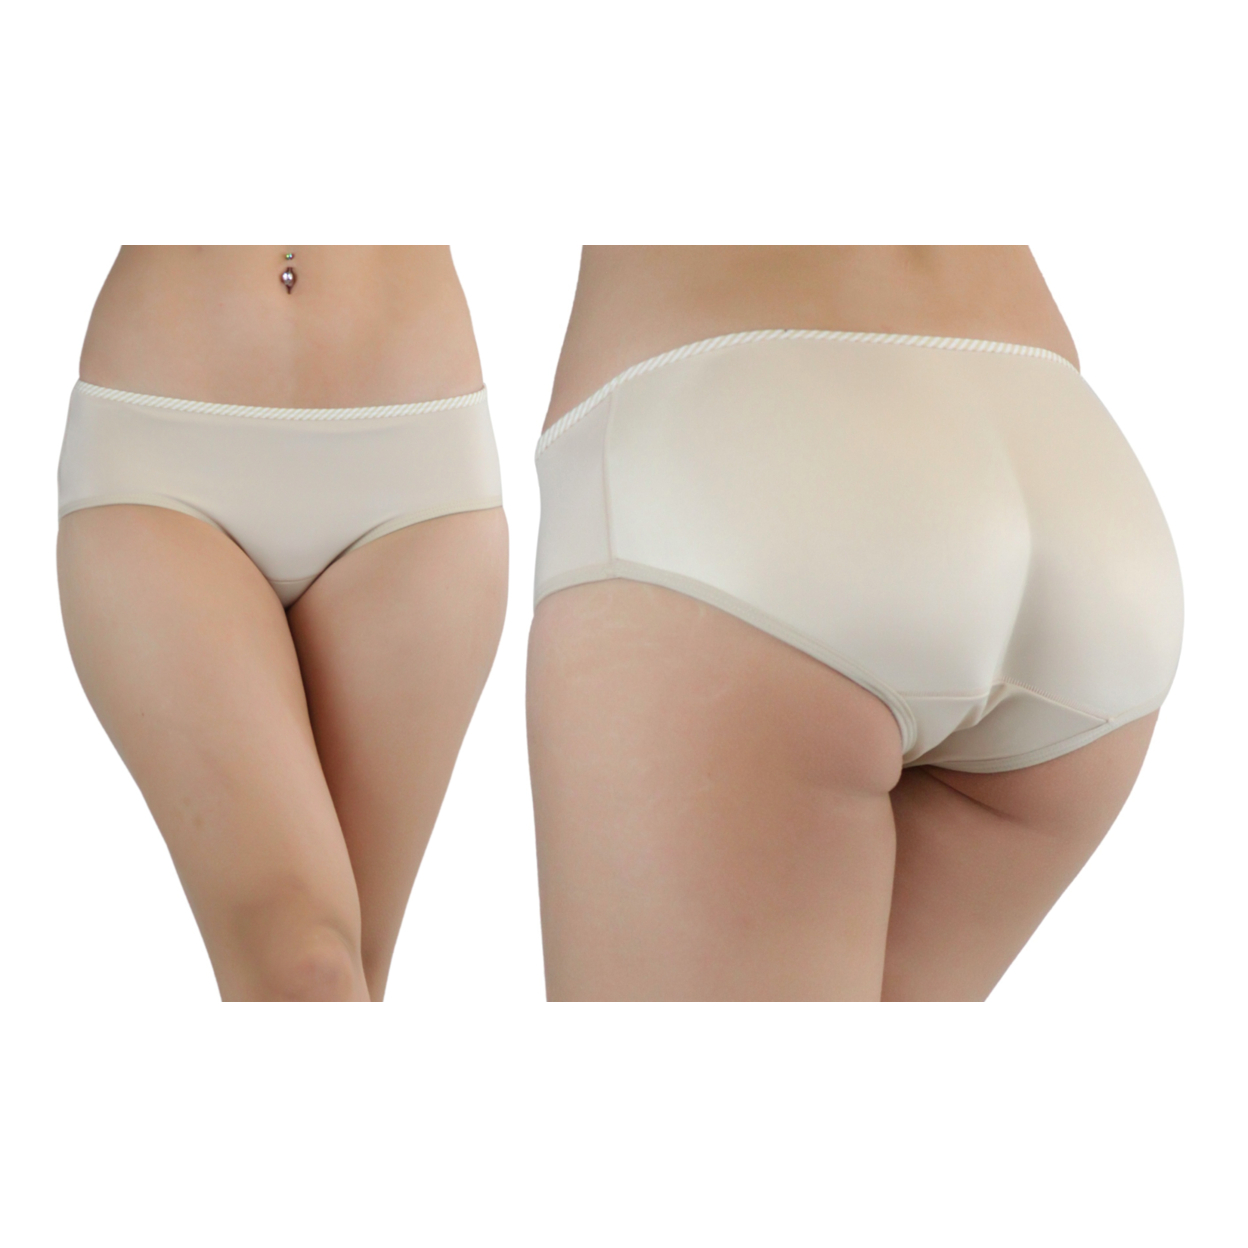 Women's Low-Rise Padded Panties - White, XL